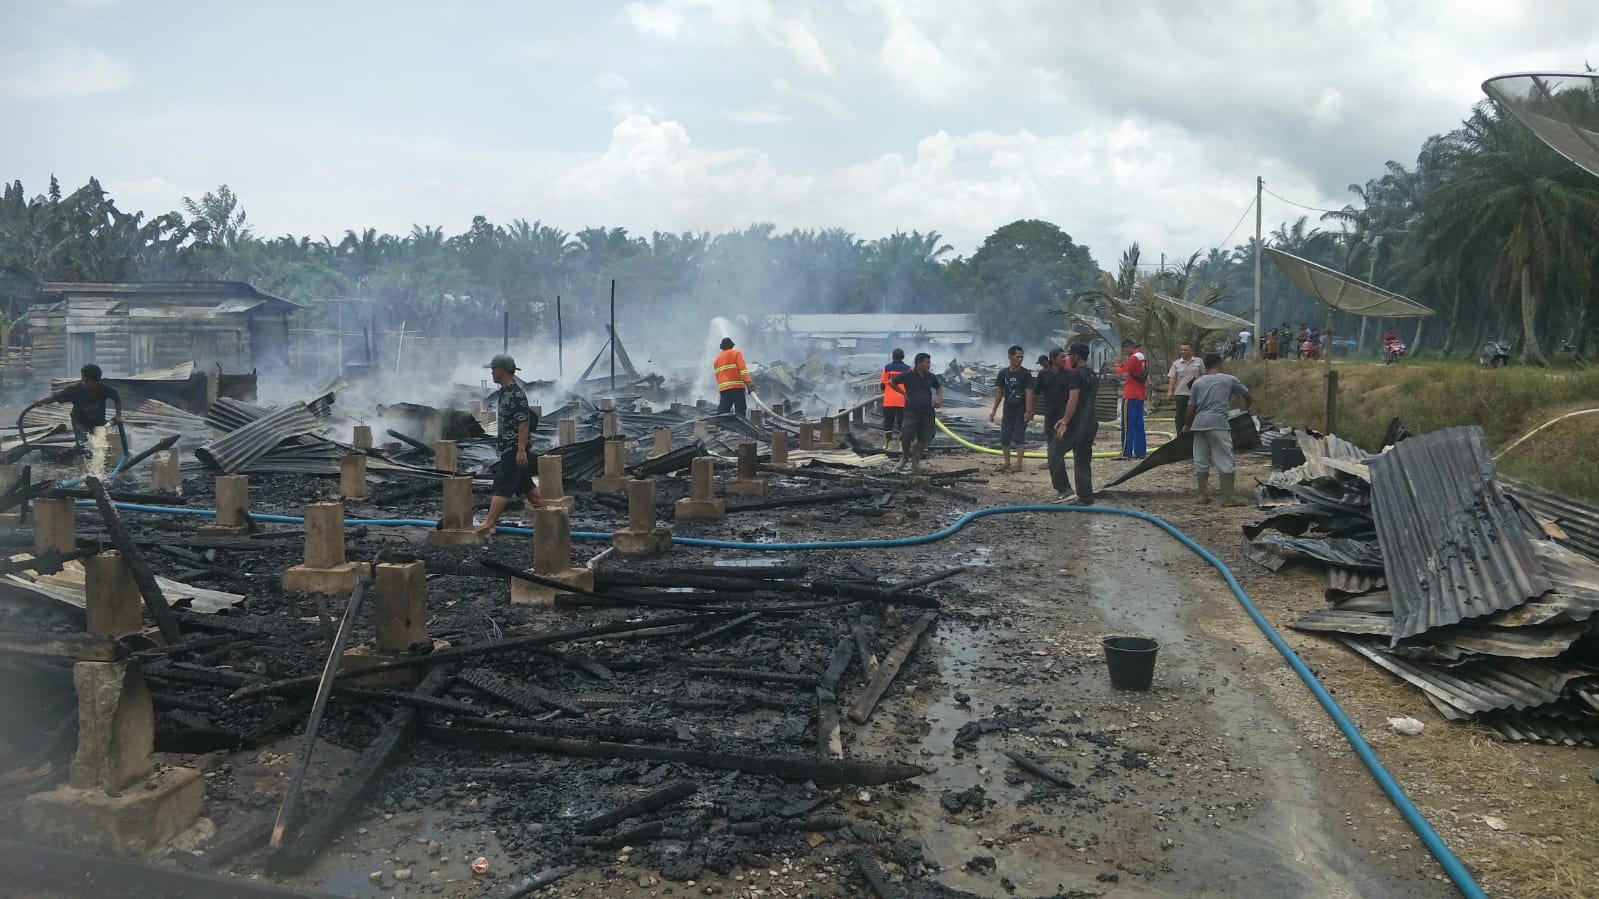 Kebakaran di Aceh Barat Daya, 70 jiwa kehilangan tempat tinggal